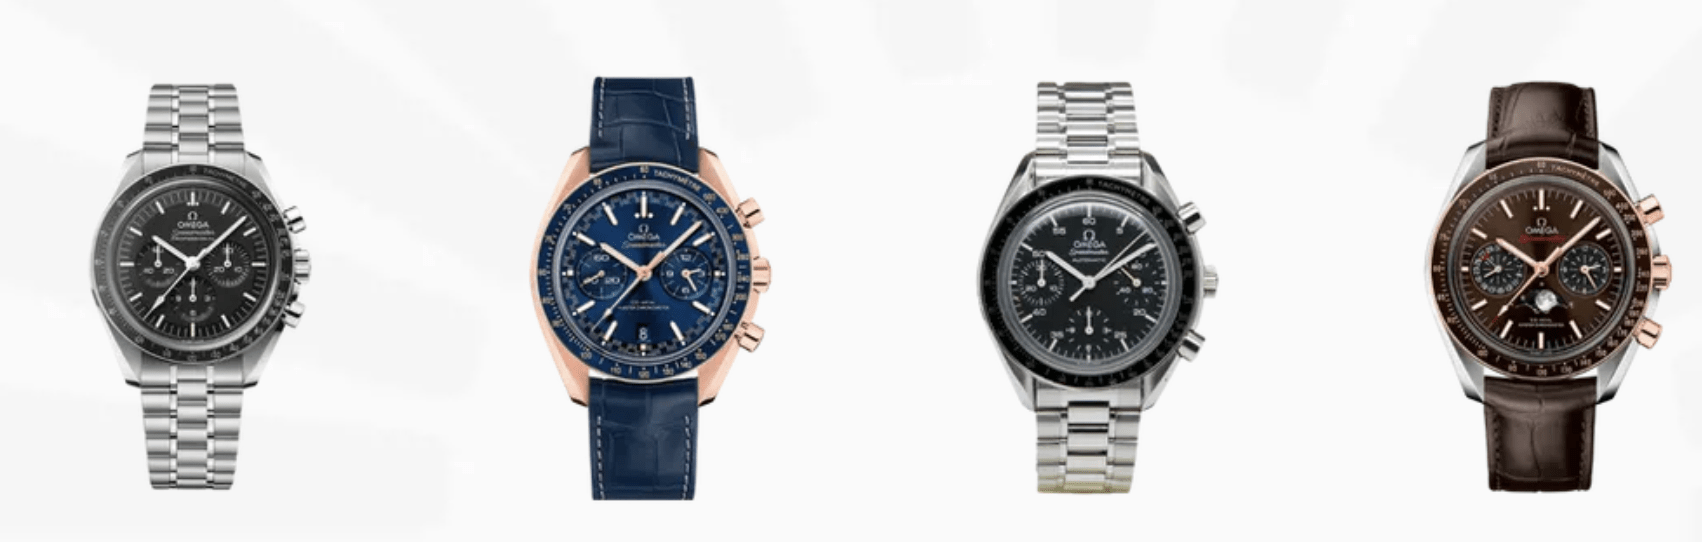 De hipste horloges voor ieder budget